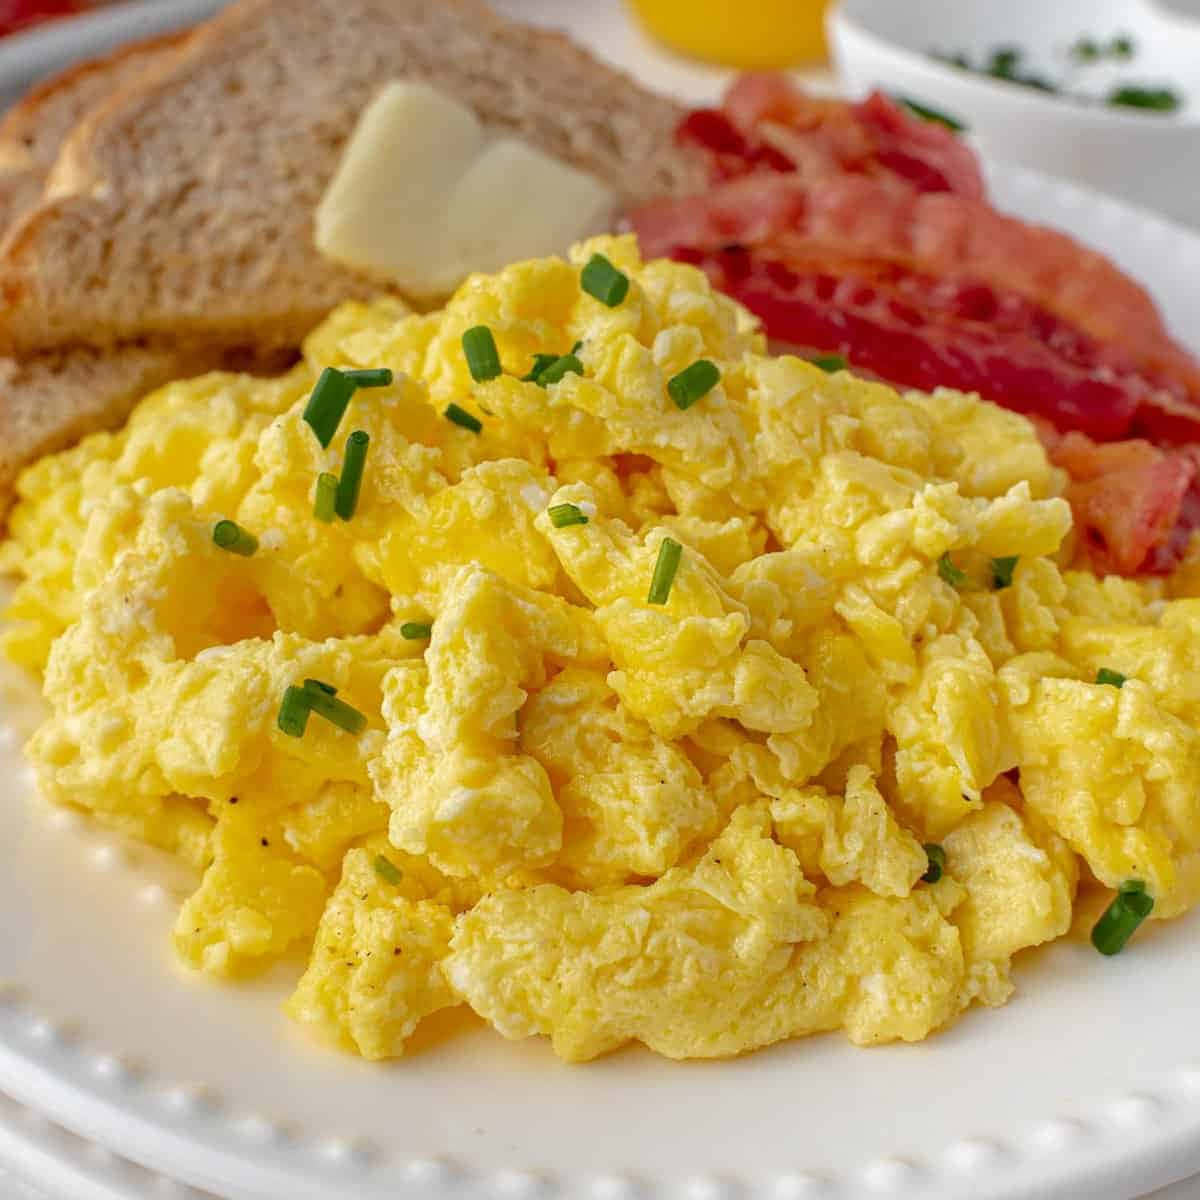 Enjoy a Delicious Scramble of Eggs